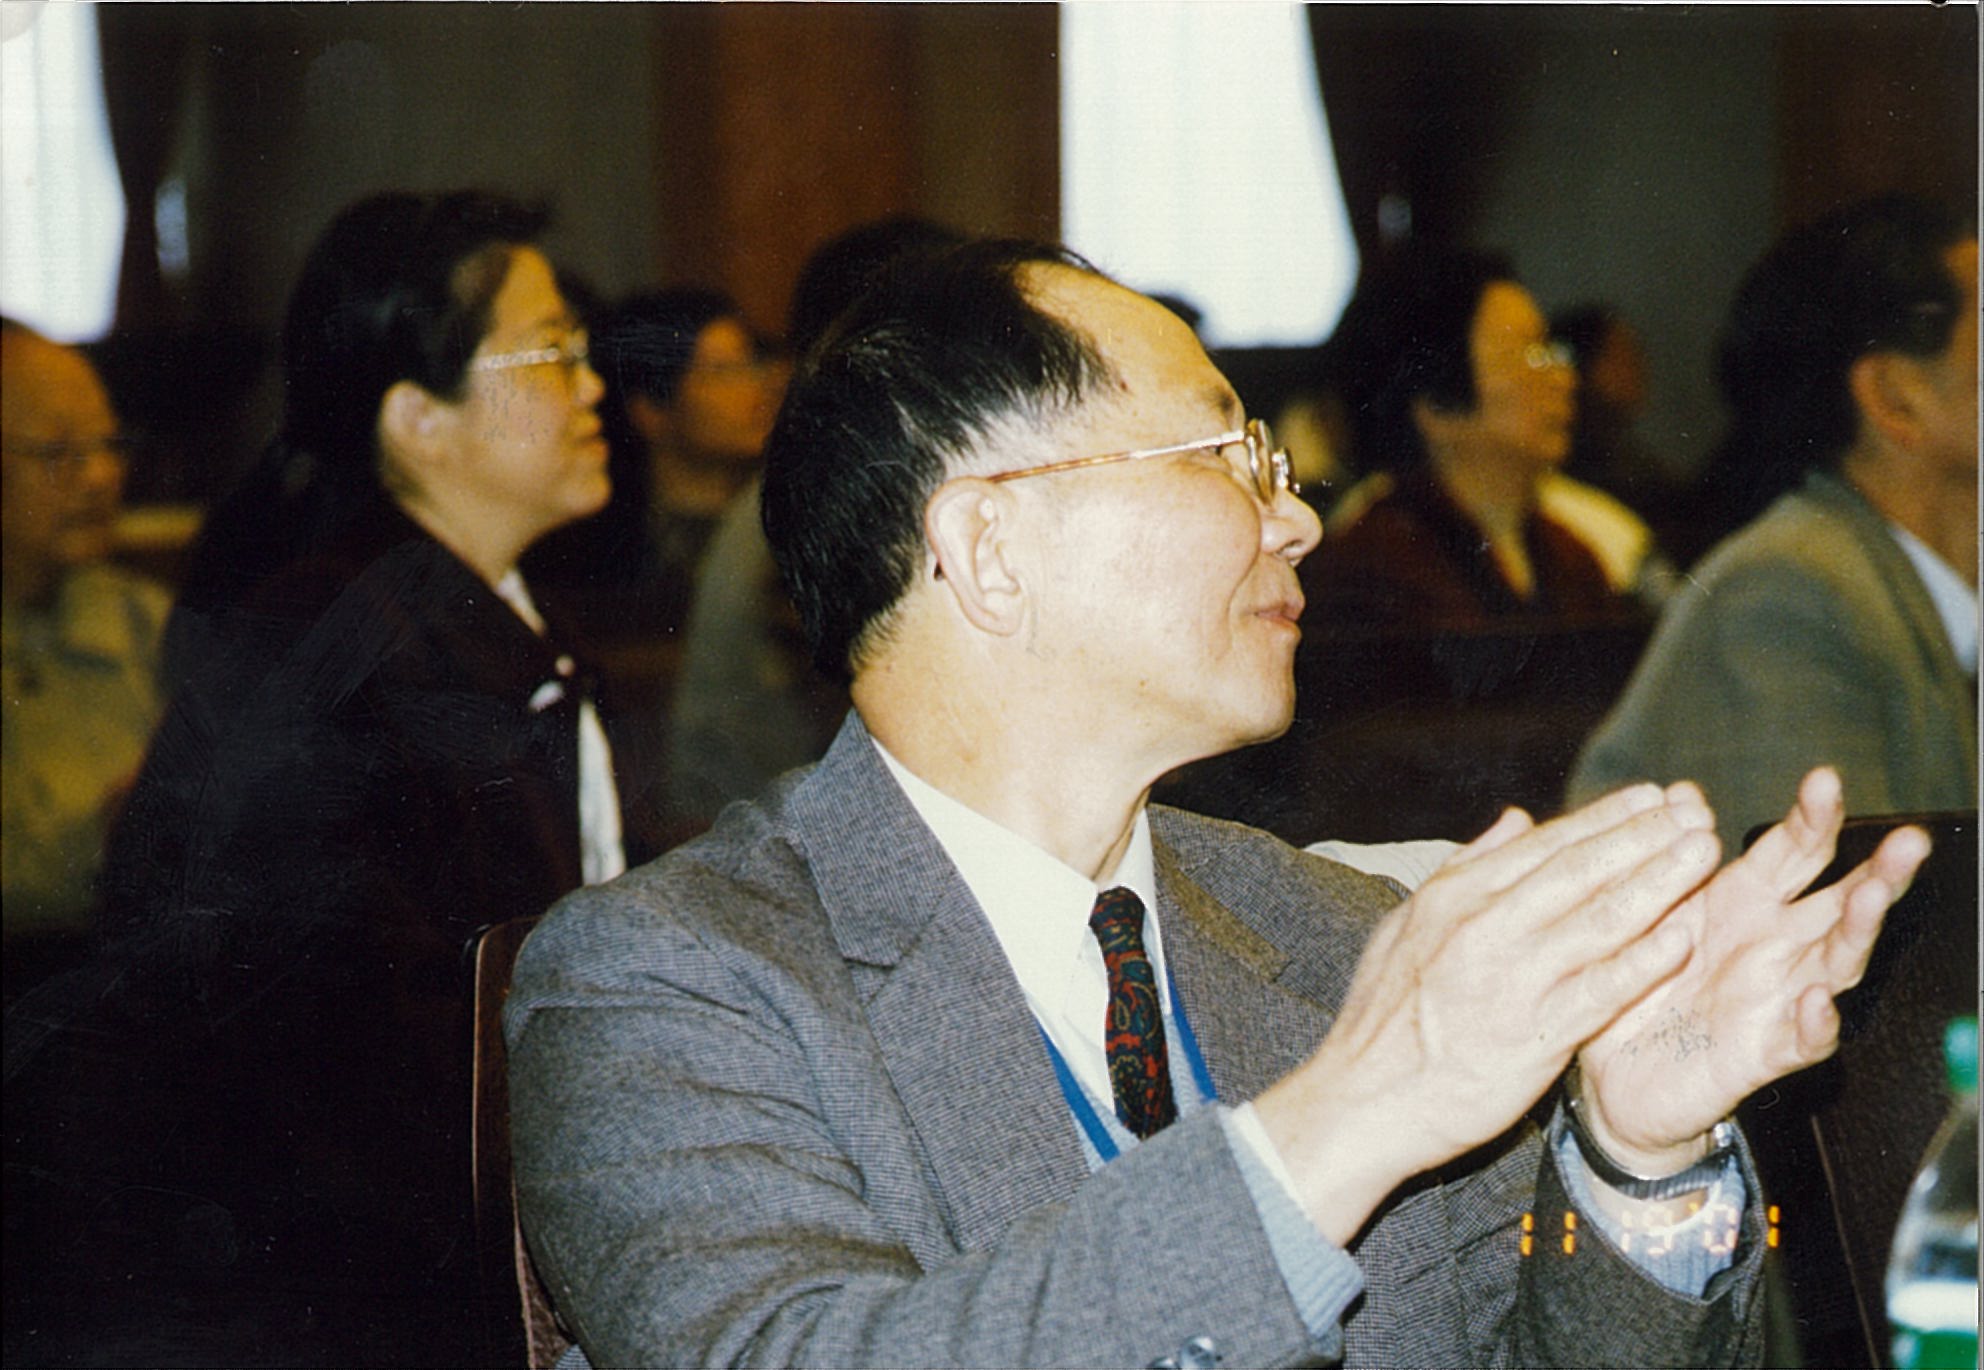 在北京清华大学召开《新世纪力学学术研讨会-钱学森技术科学思想的回顾与展望》会议（2001年11月19日~20日），白以龙出席会议。